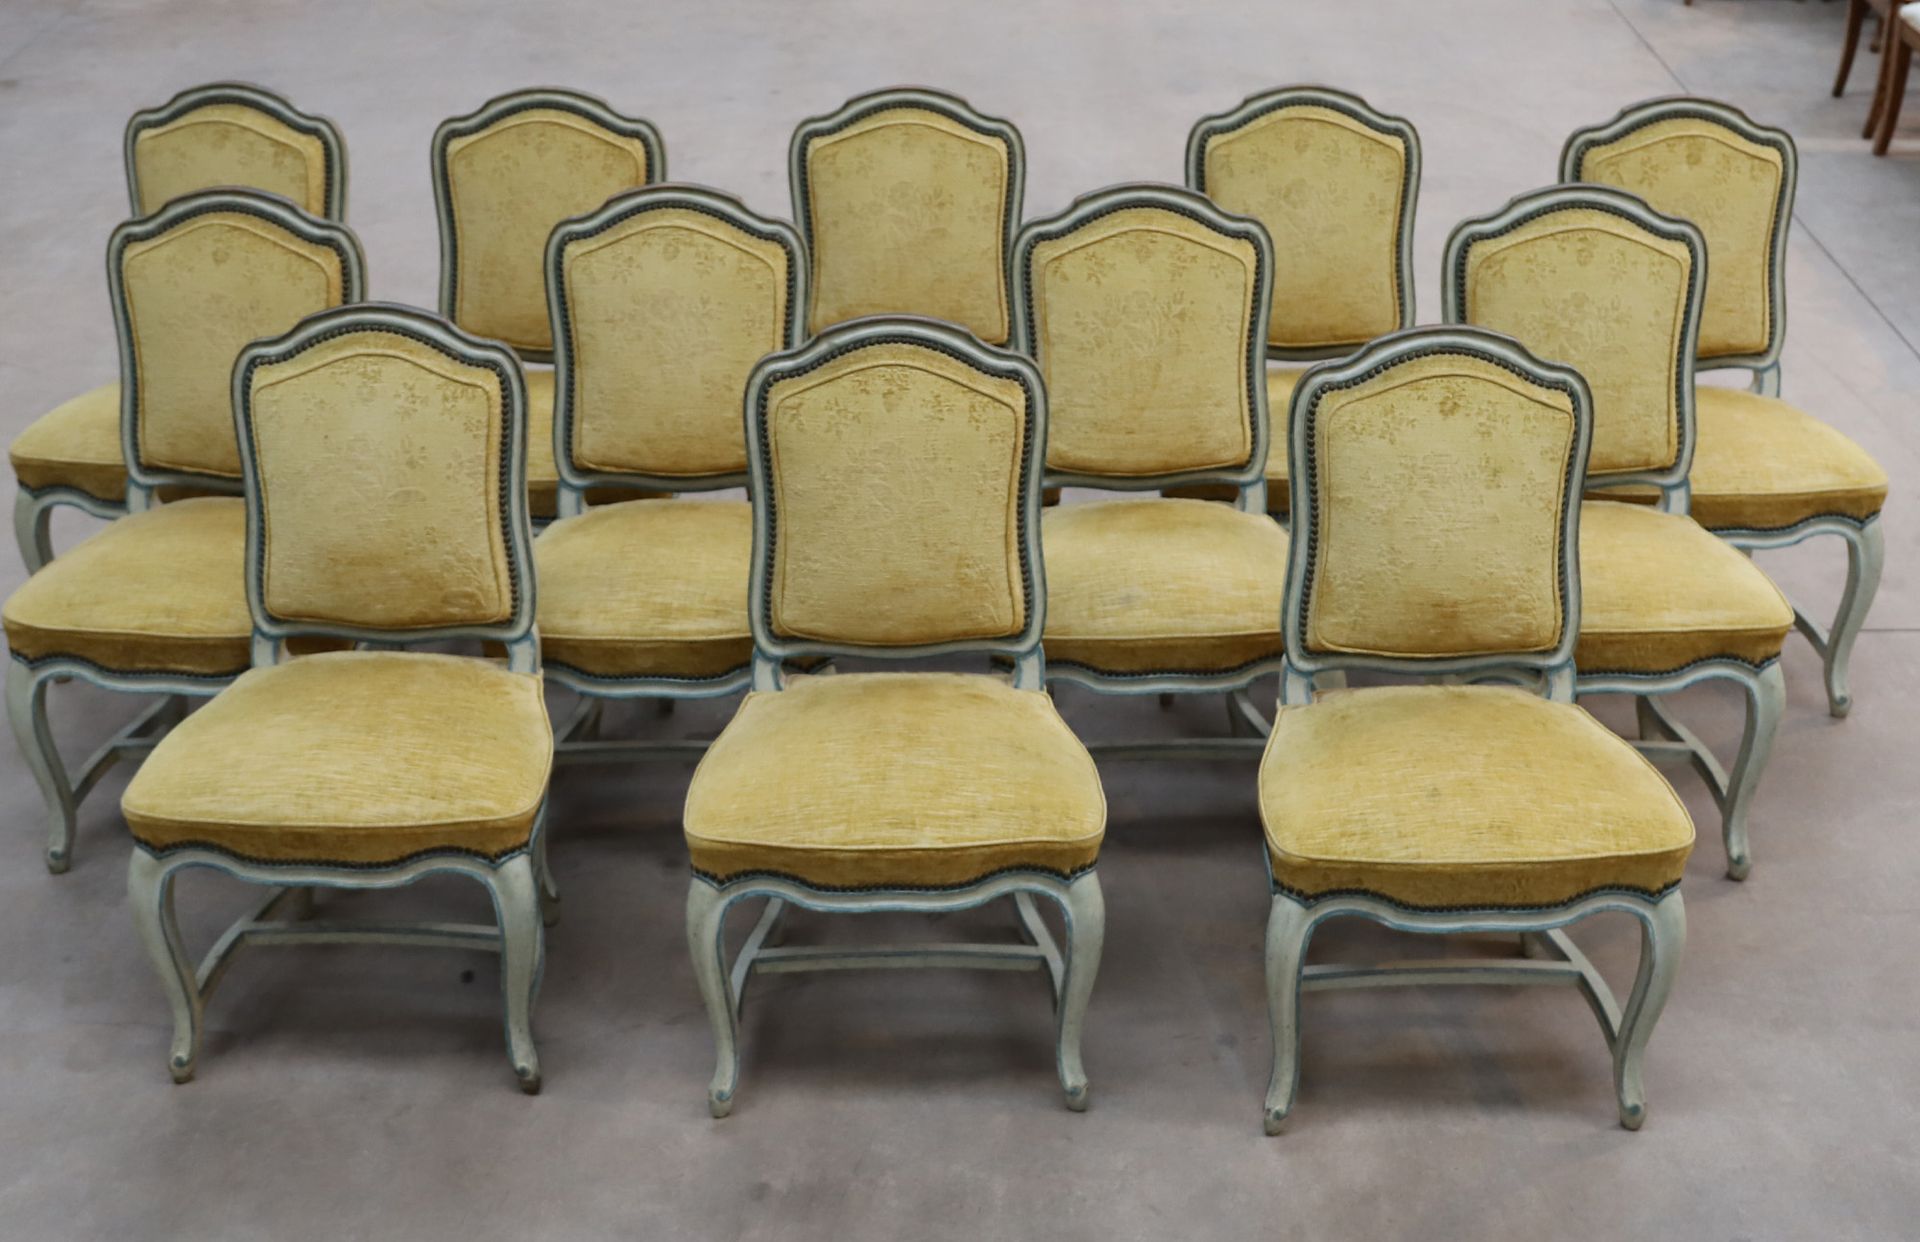 Null 一套12把带蓝线的木椅，以布兰查德的精神为模型

座椅和背部覆盖着黄色天鹅绒

弯曲的腿由一个H形支架连接

95 x 57.5 x 47.5 厘米